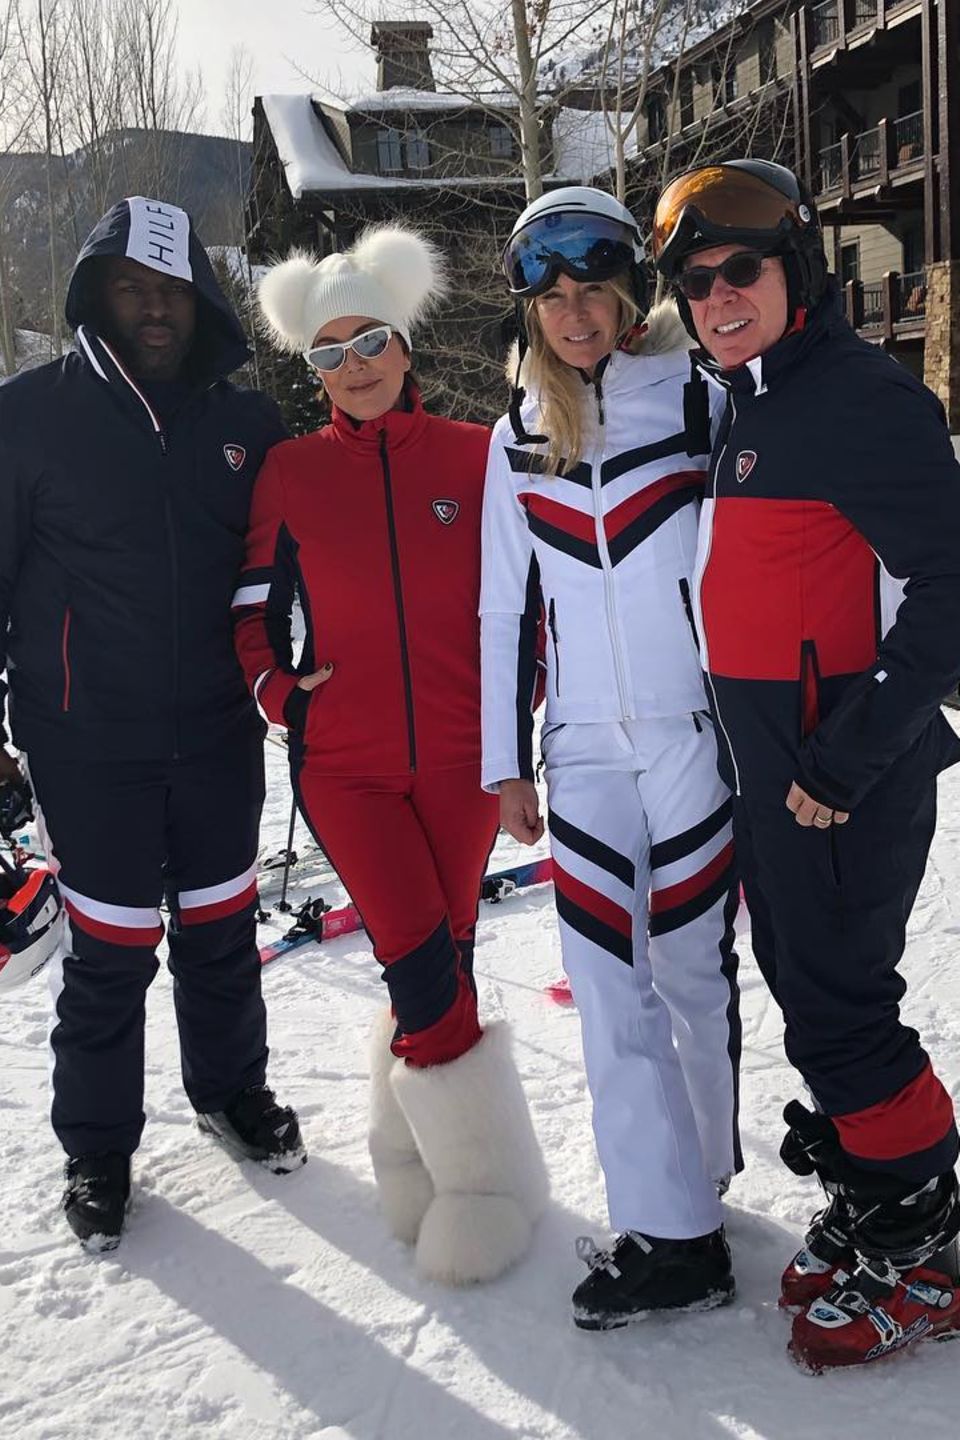 Dürfen wir vorstellen, Team Hilfiger! Corey Gamble, Kris Jenner und das Ehepaar Dee Ocleppo und Tommy Hilfiger (v. l. n. r.) freuen sich auf ihren Skiurlaub – eingekleidet in sportlicher Hilfiger-Montur versteht sich.